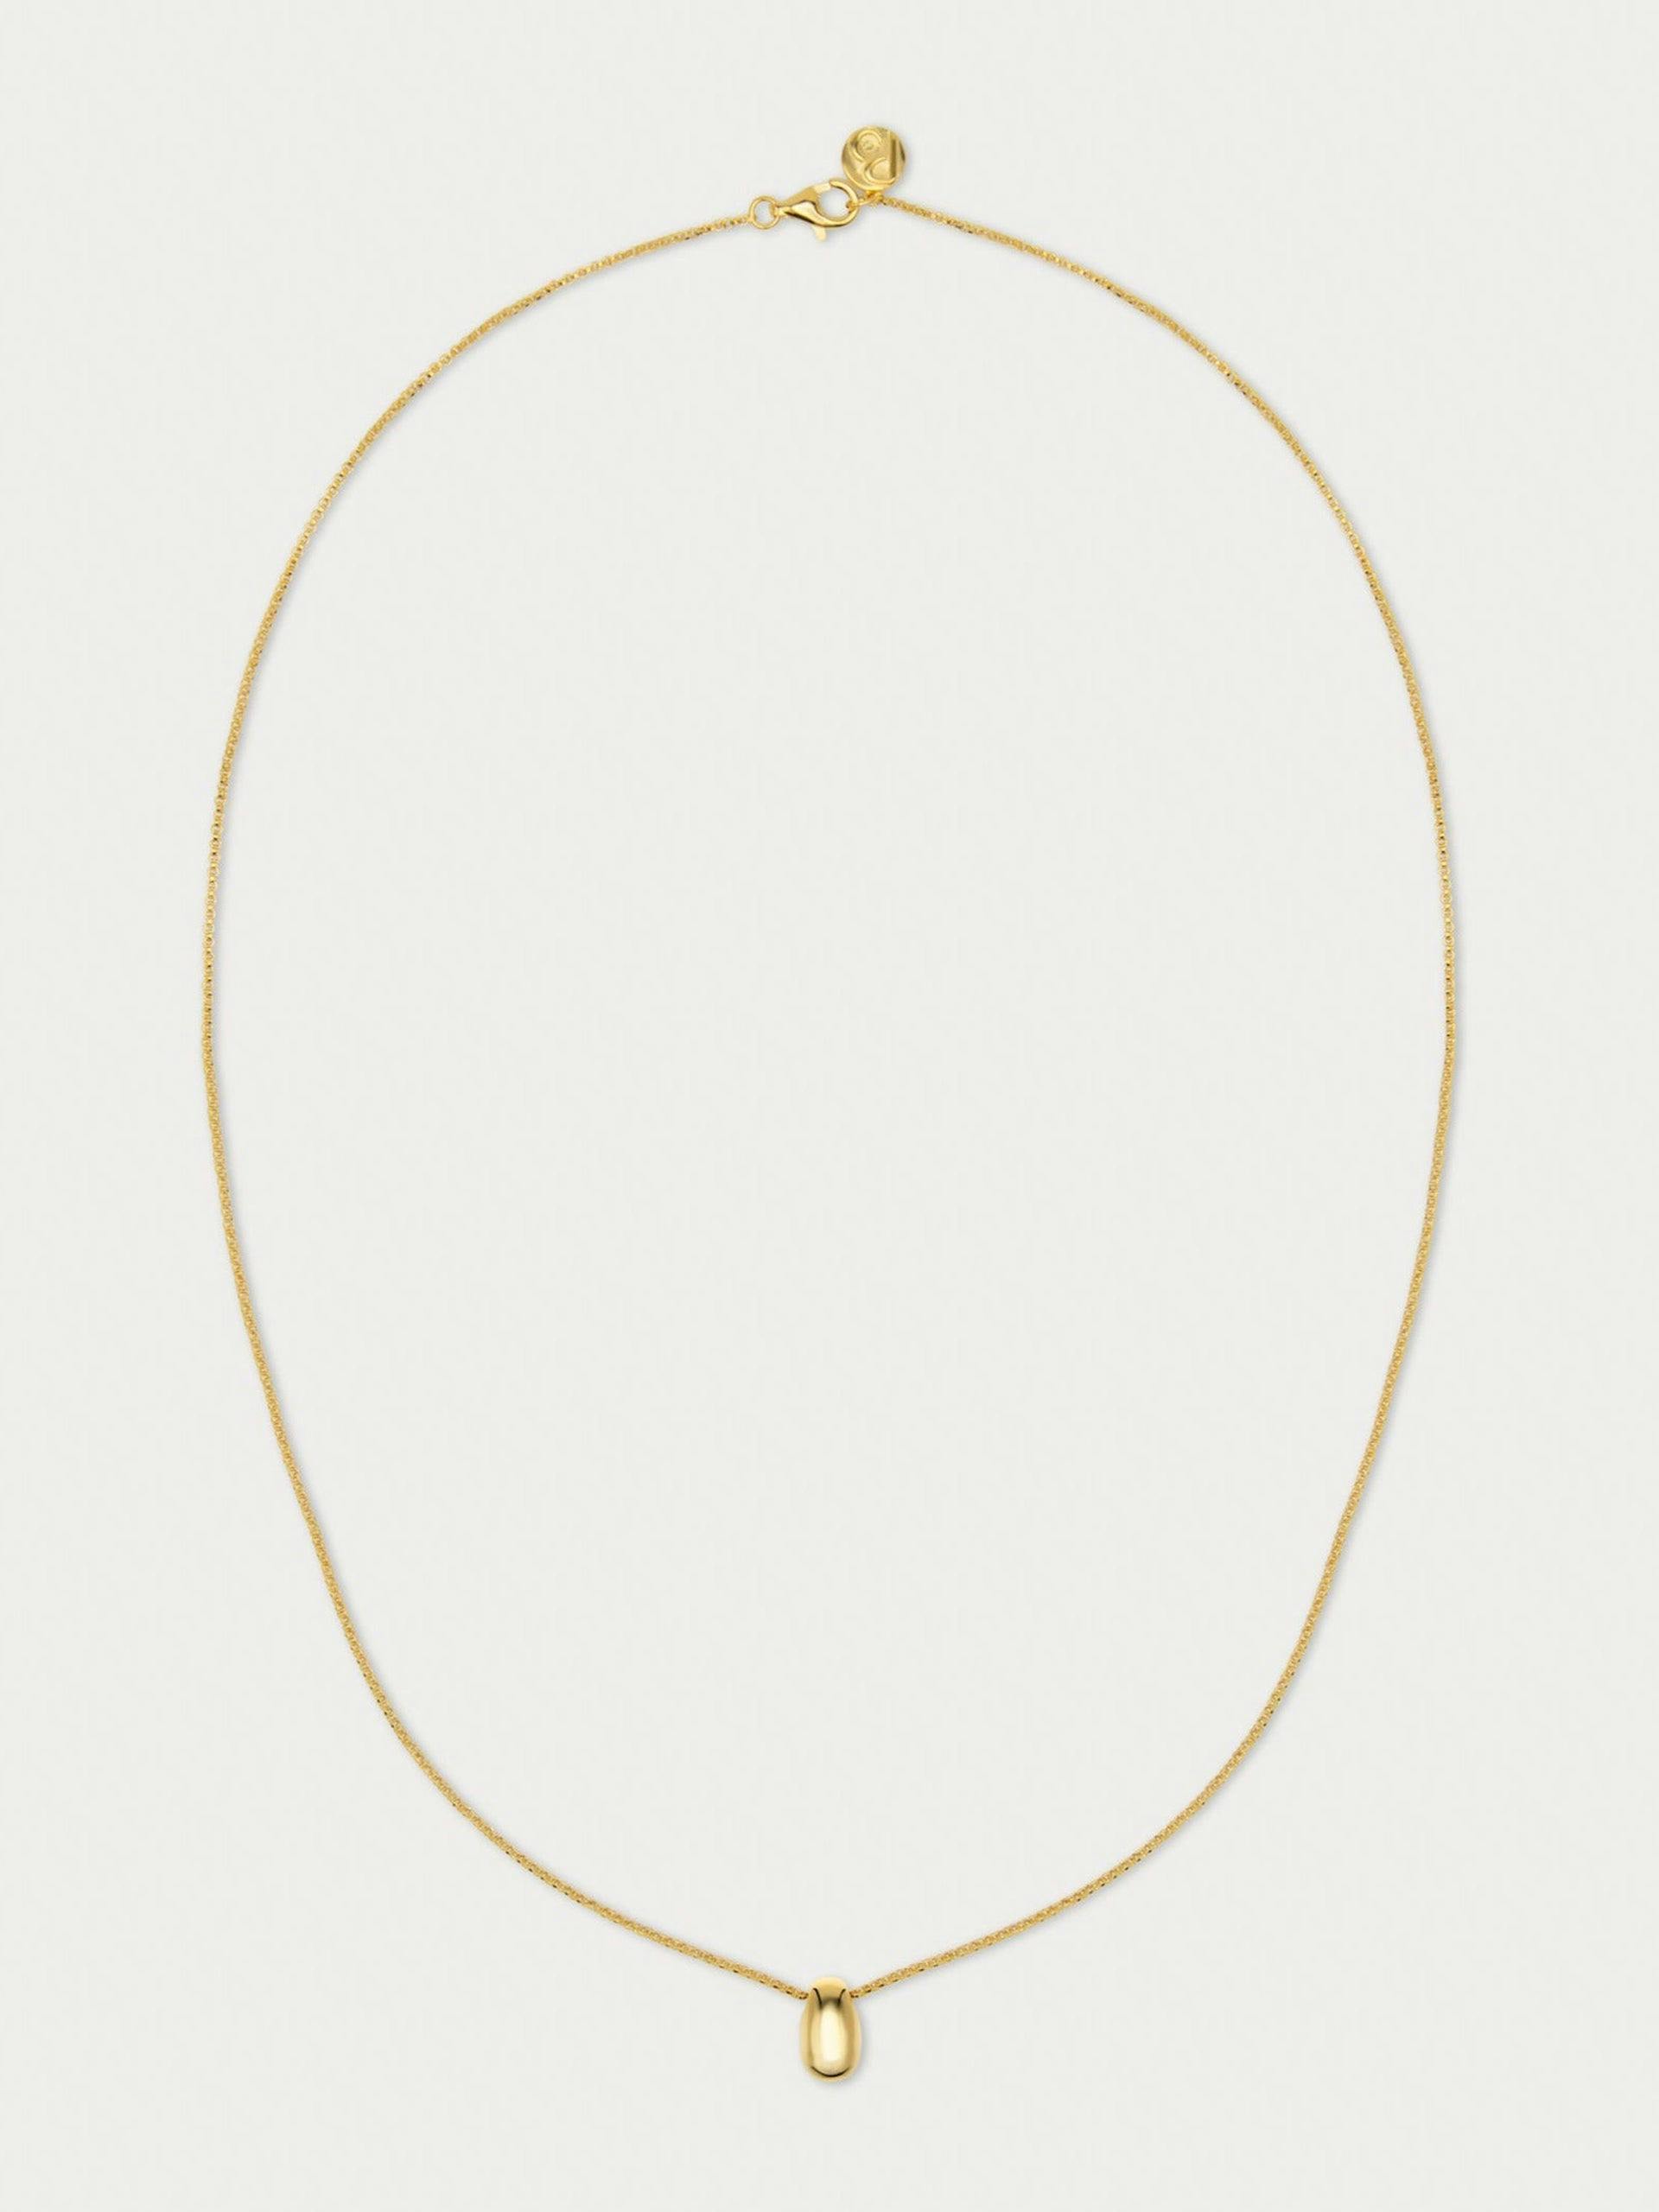 The Curve gold vermeil necklace